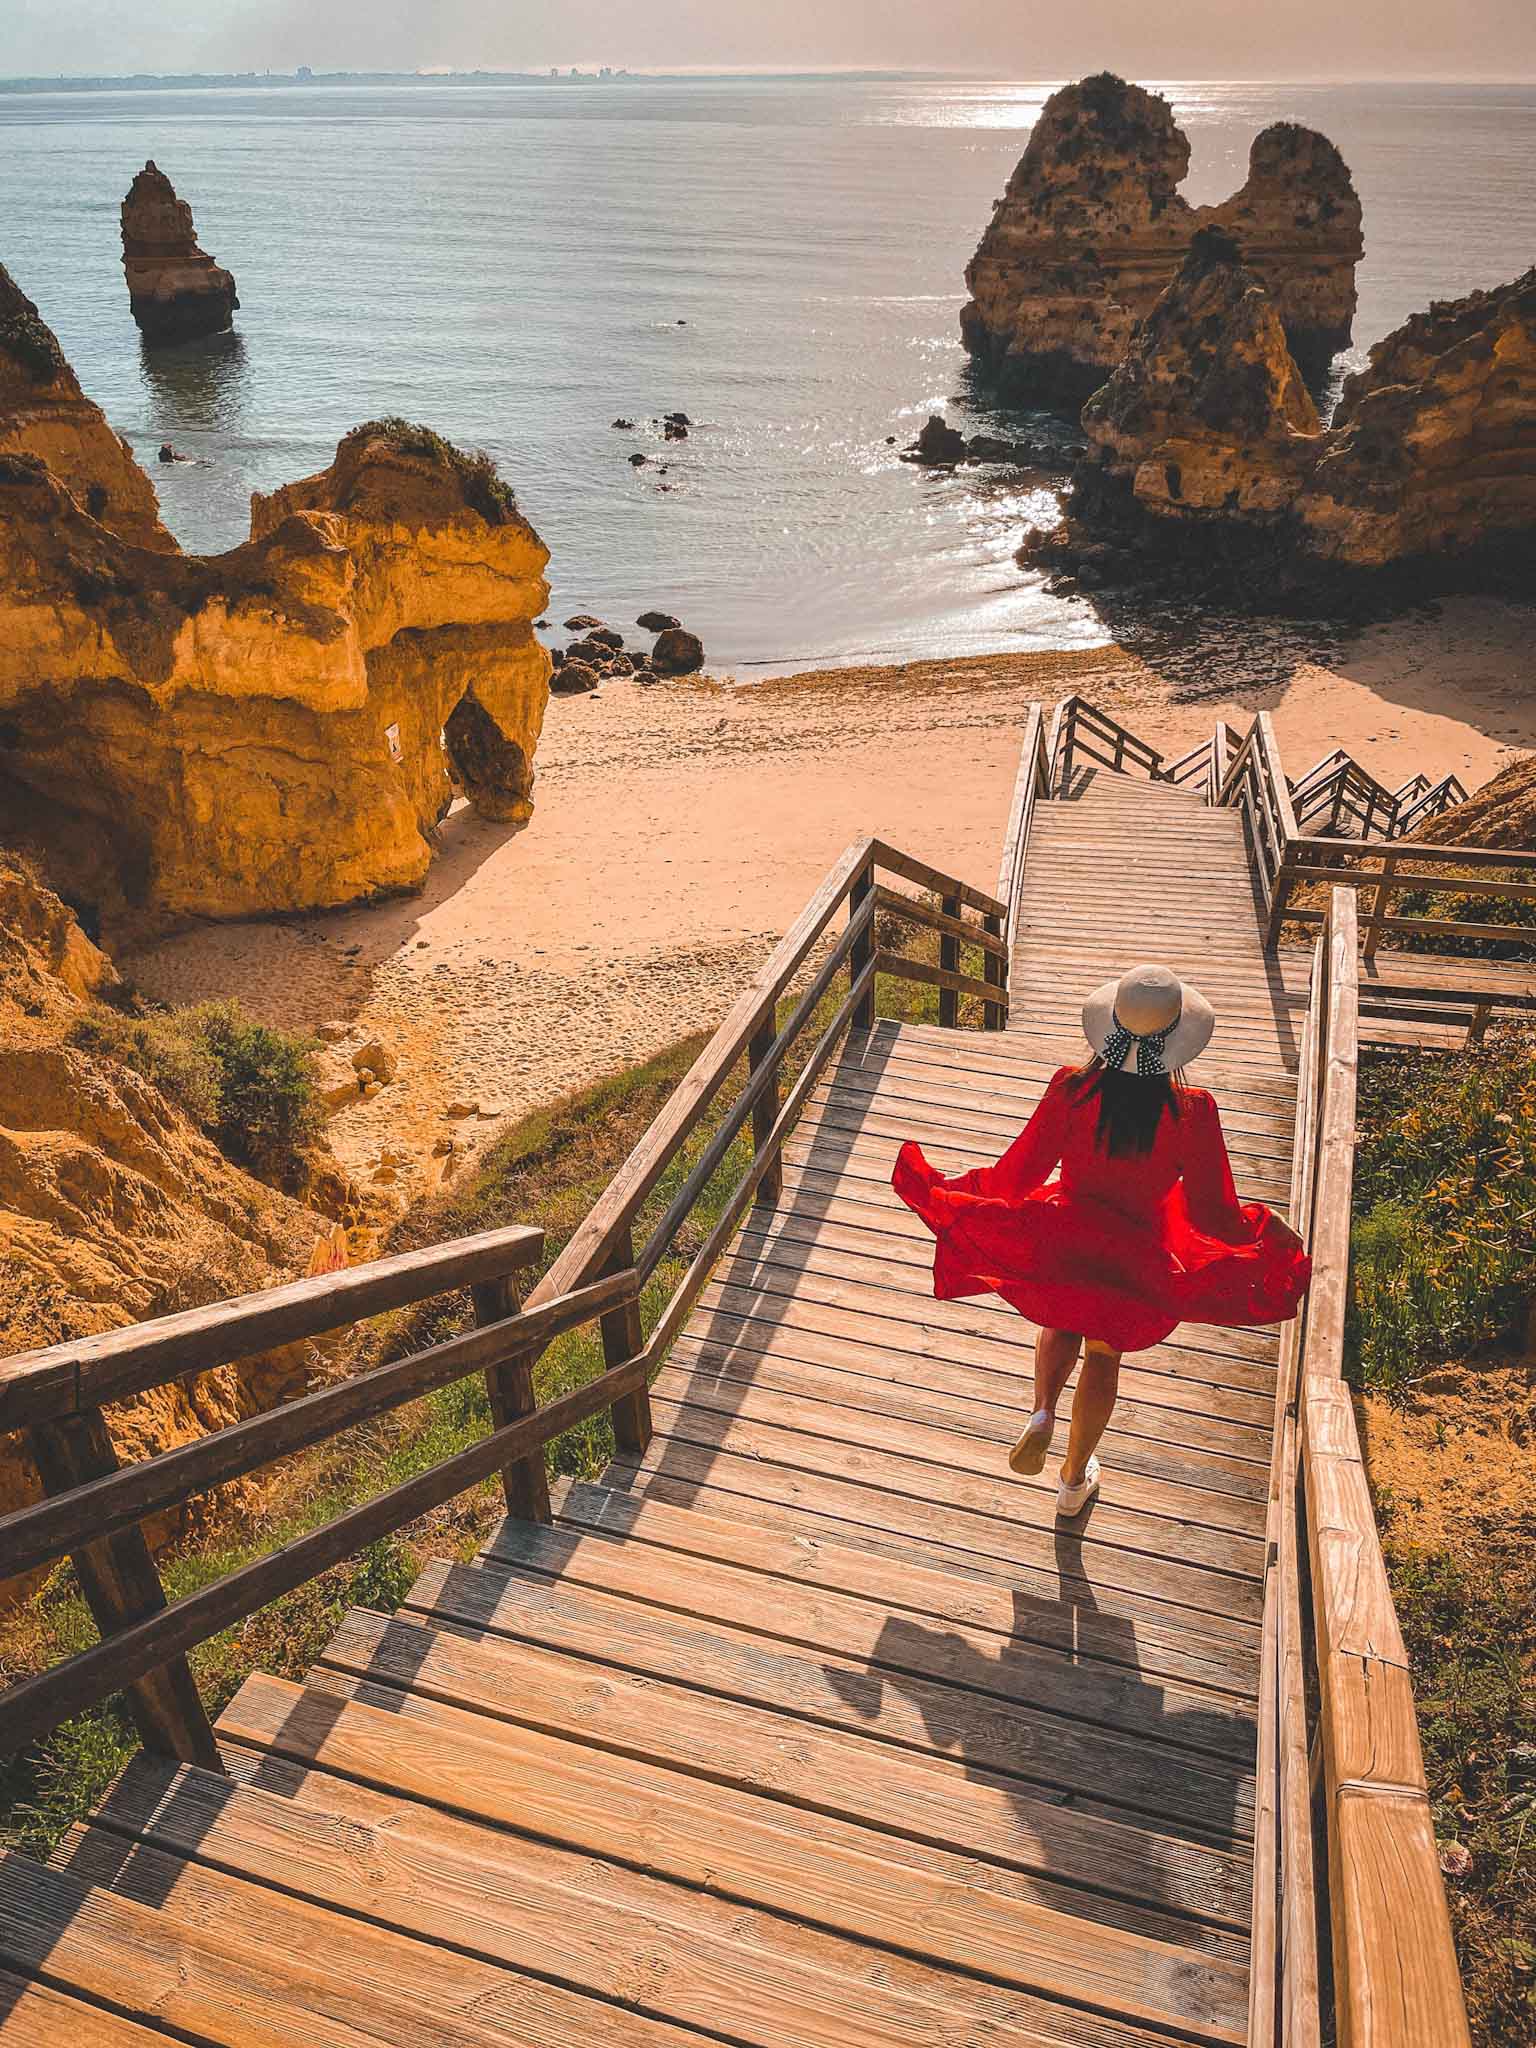 Best Instagram spots in Algarve in Portugal - Praia do Camilo